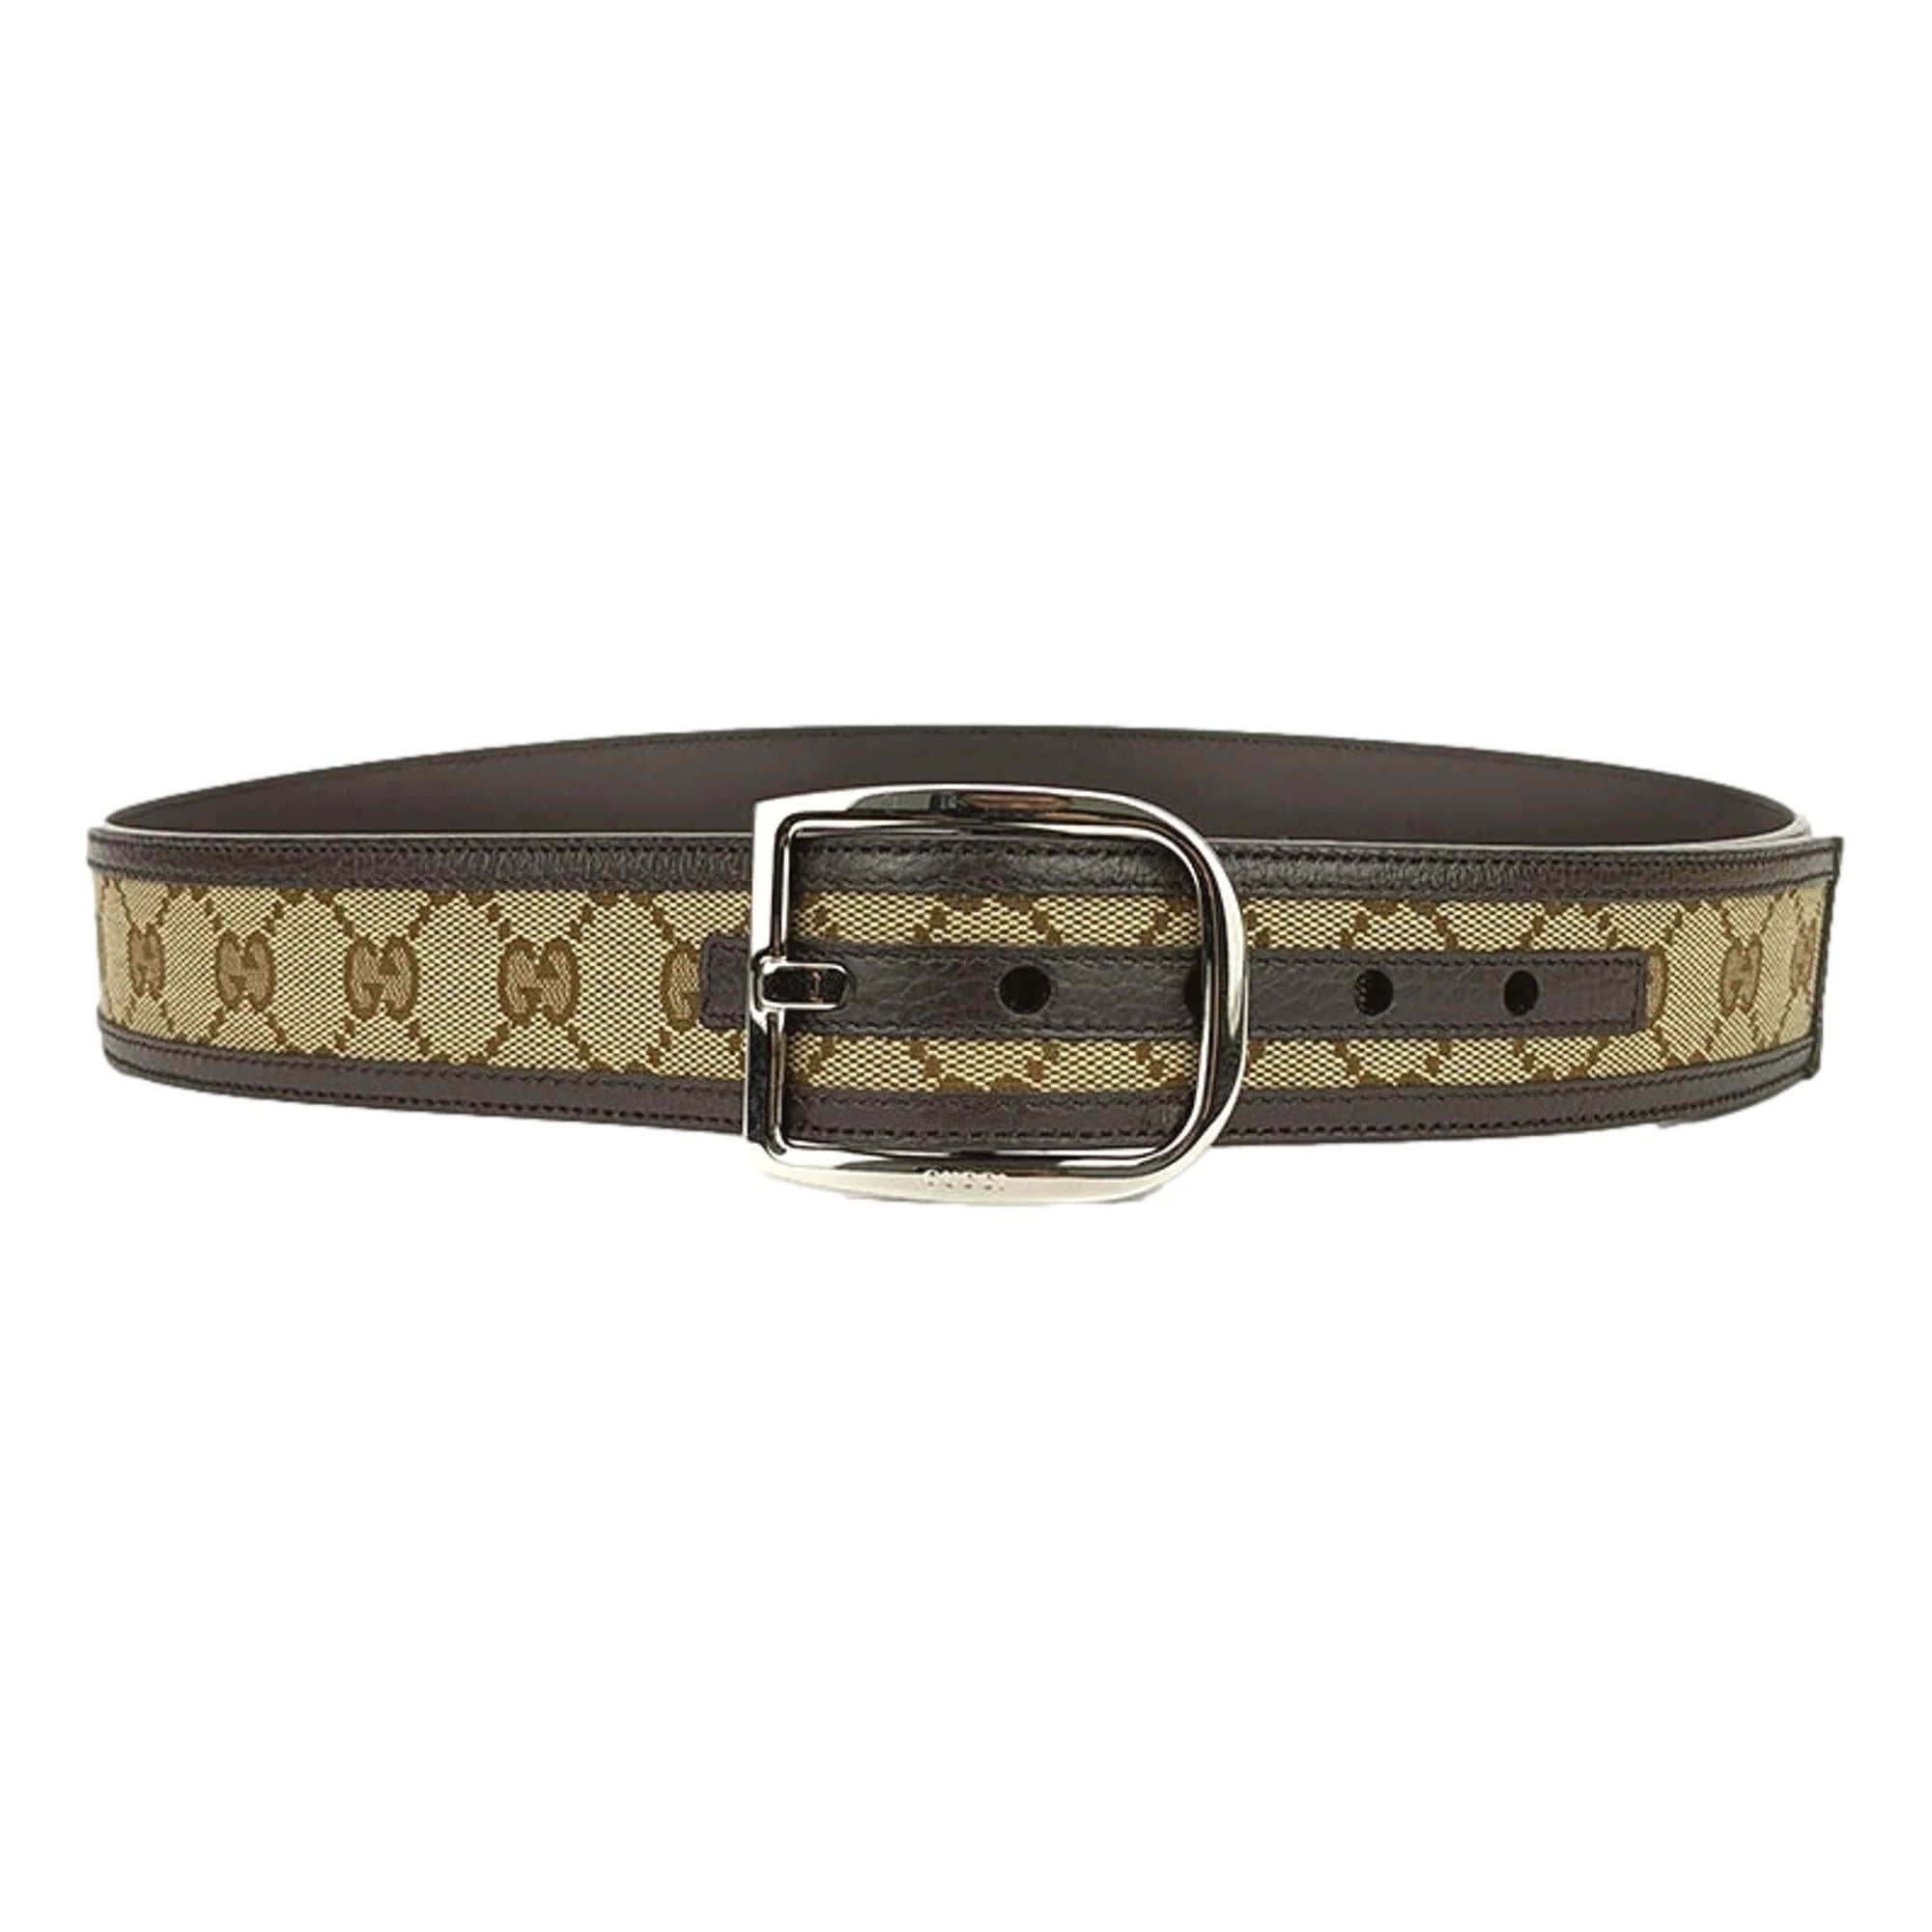 Gucci GG Canvas Brown Leather Palladium Buckle Belt 95/38 449716